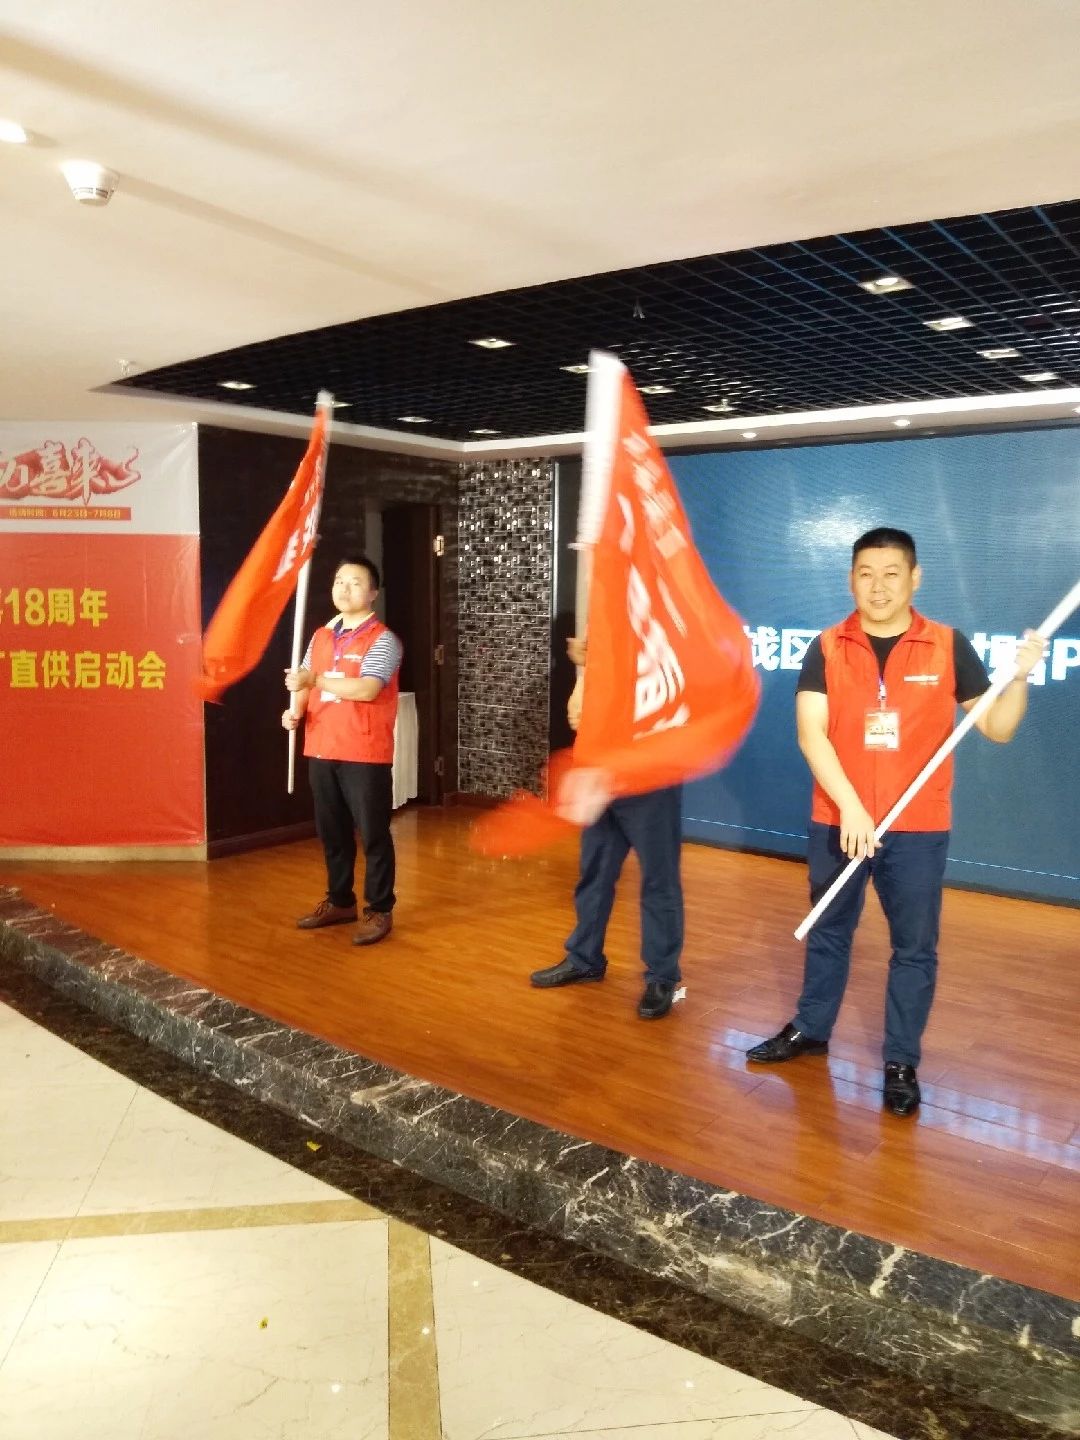 米乐m6
18周年庆 工厂直销中国大型活动重庆启动会开幕(图3)